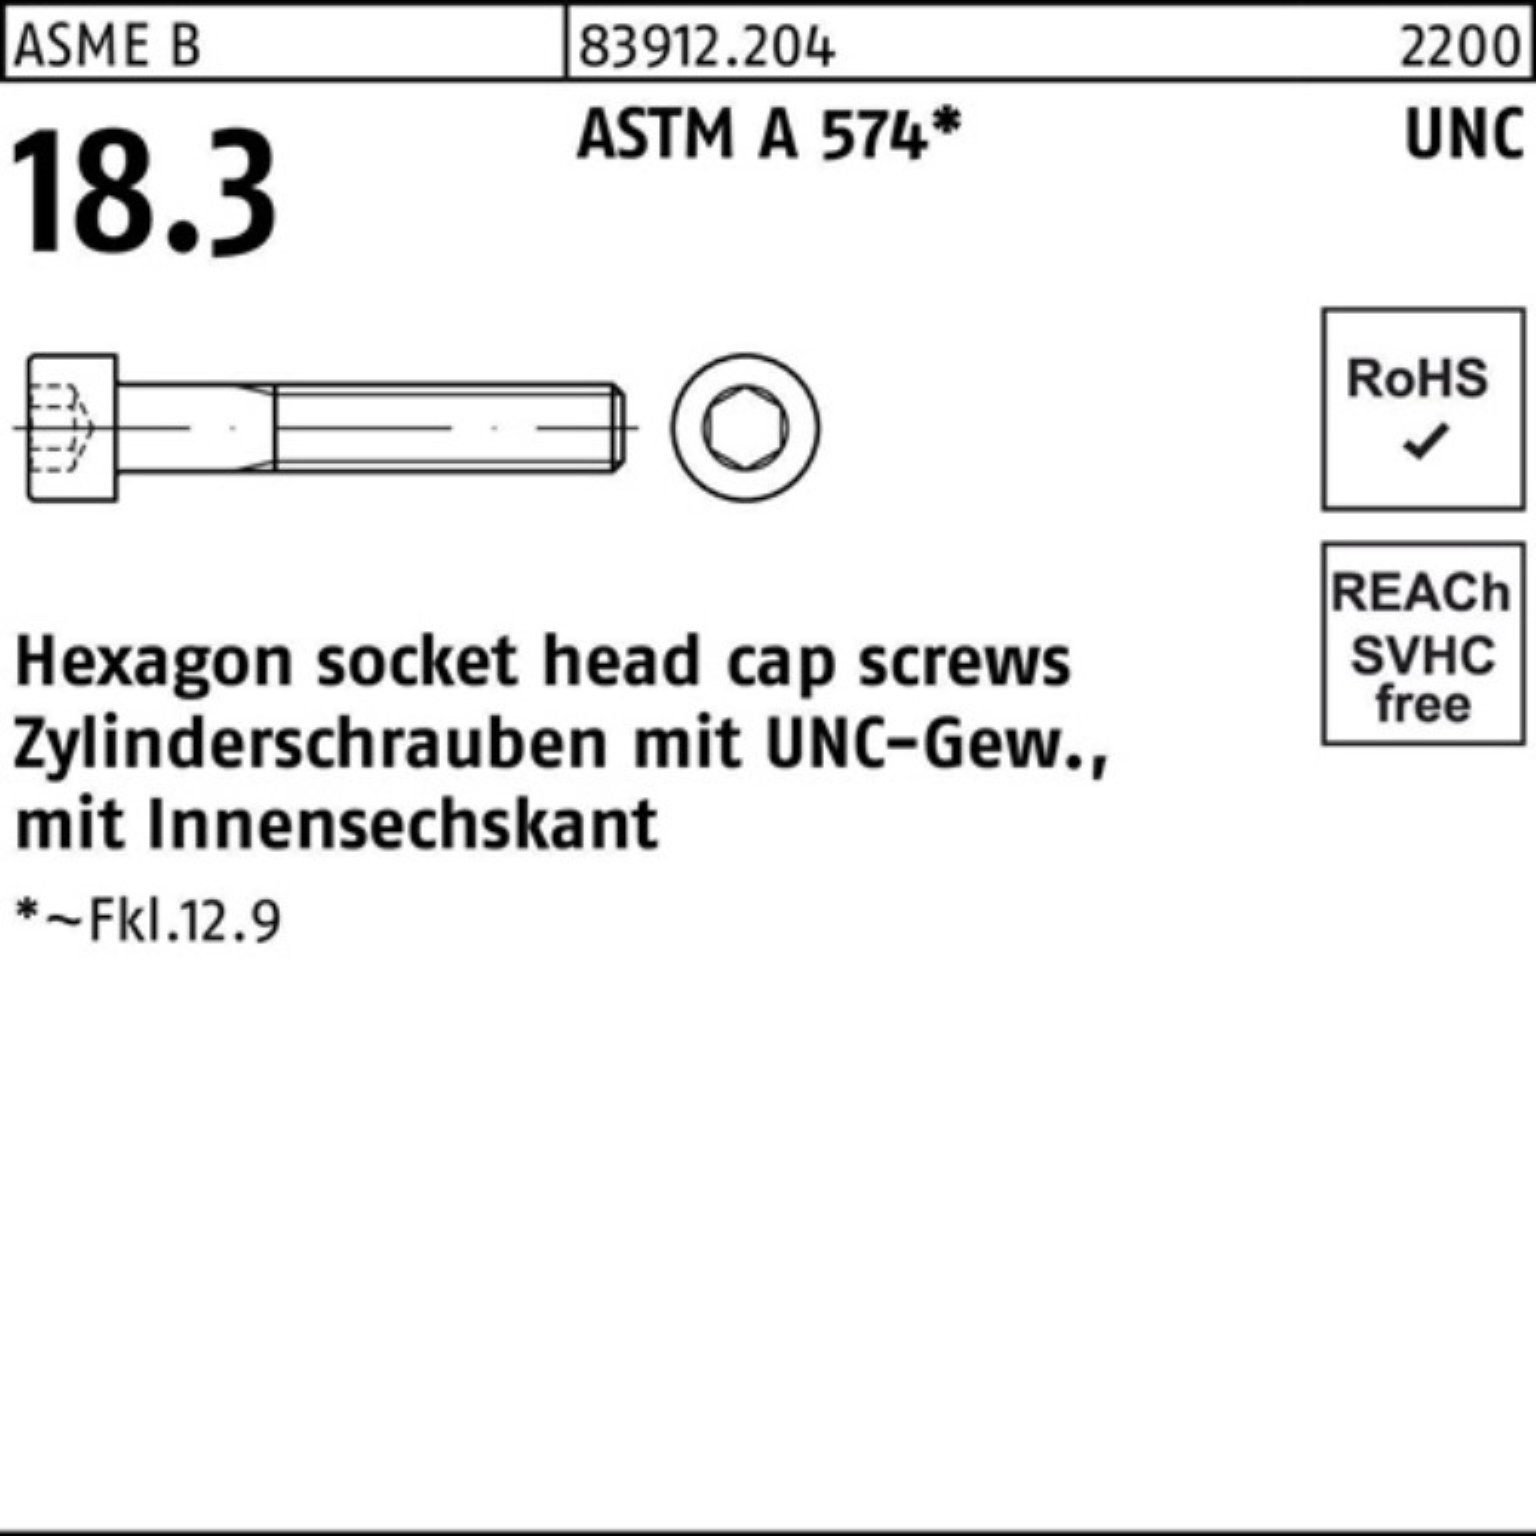 Pack 1x 2 UNC-Gewinde/Innen-6kt 83912 AST R Zylinderschraube 100er Zylinderschraube Reyher 3/4